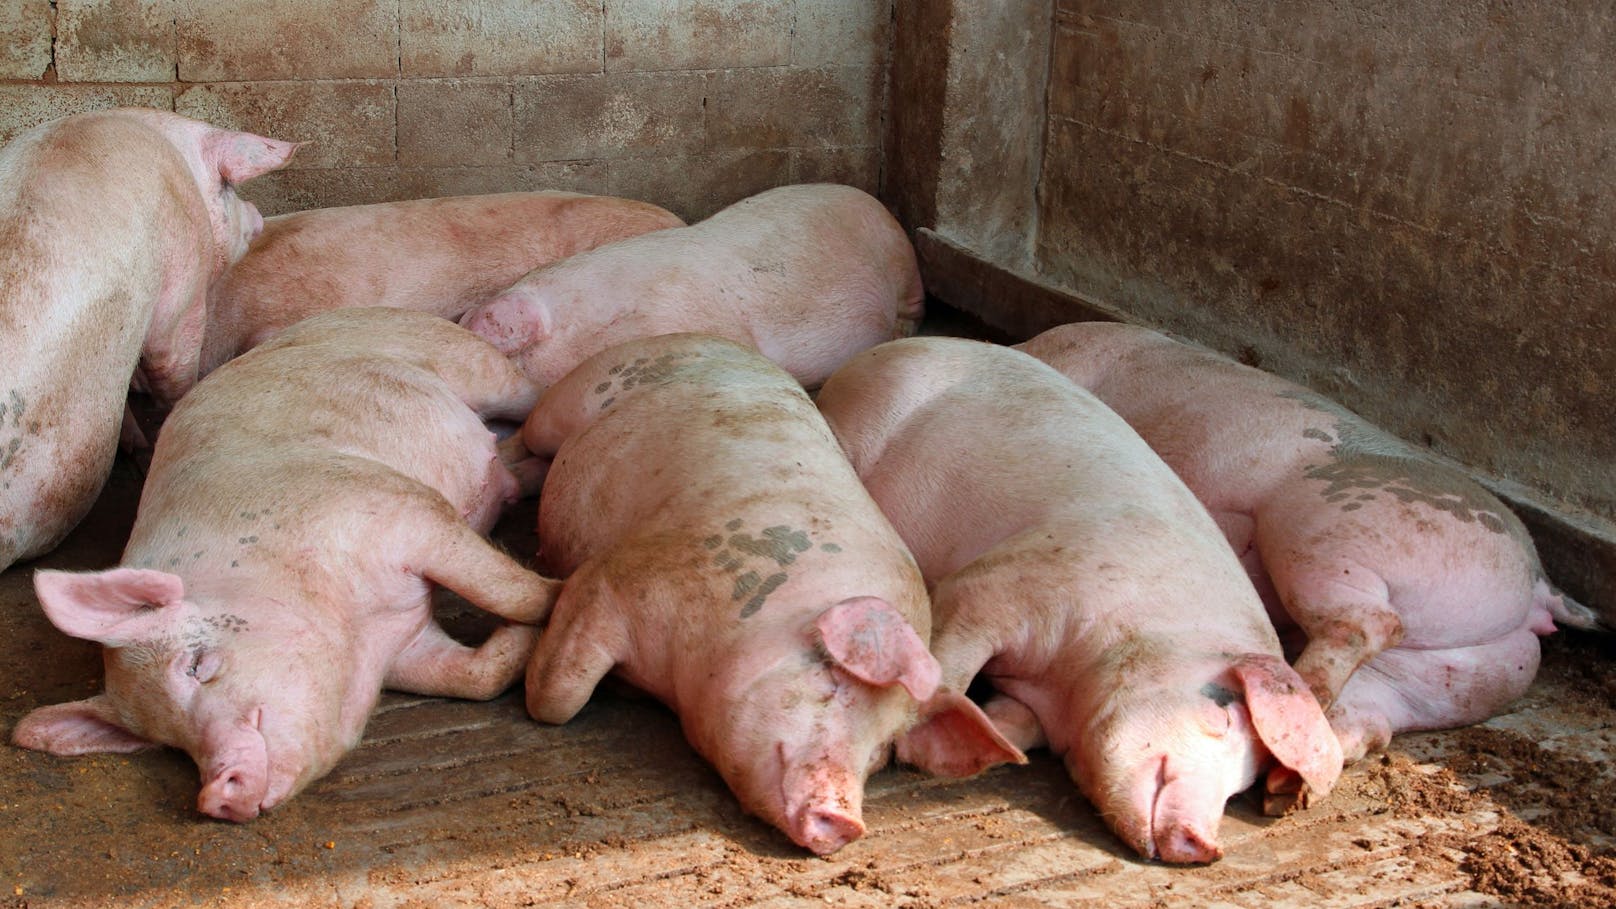 Unbekannte sabotierten Stall - Dutzende Schweine tot